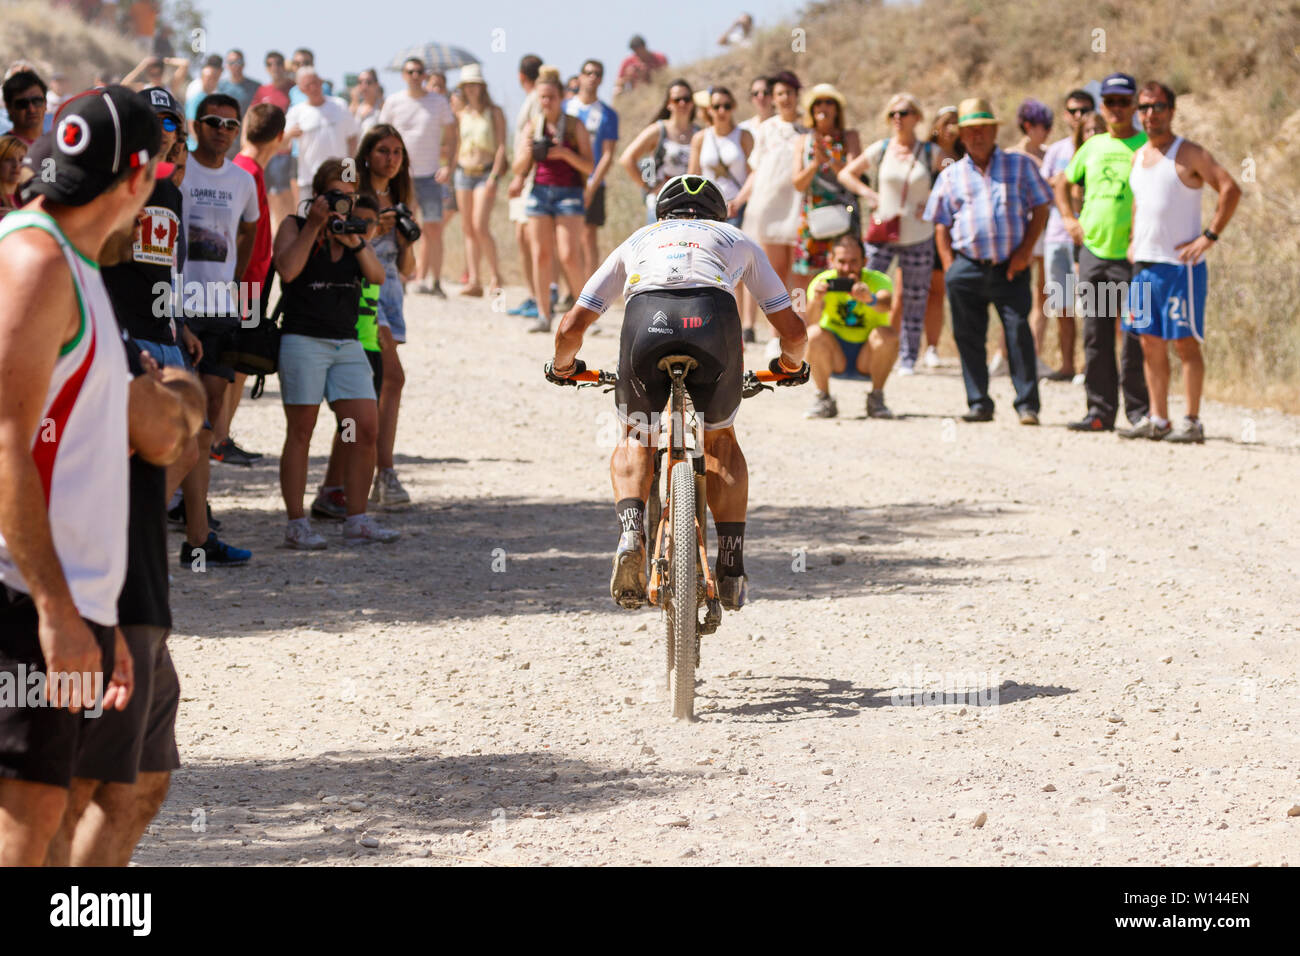 Extreme Bardenas 2019. 1500 Menschen fahren mit dem Rad in der Wüste Europas. Naturpark Bardenas Reales. Biosphärenreservat. Navarra. Spanien Stockfoto